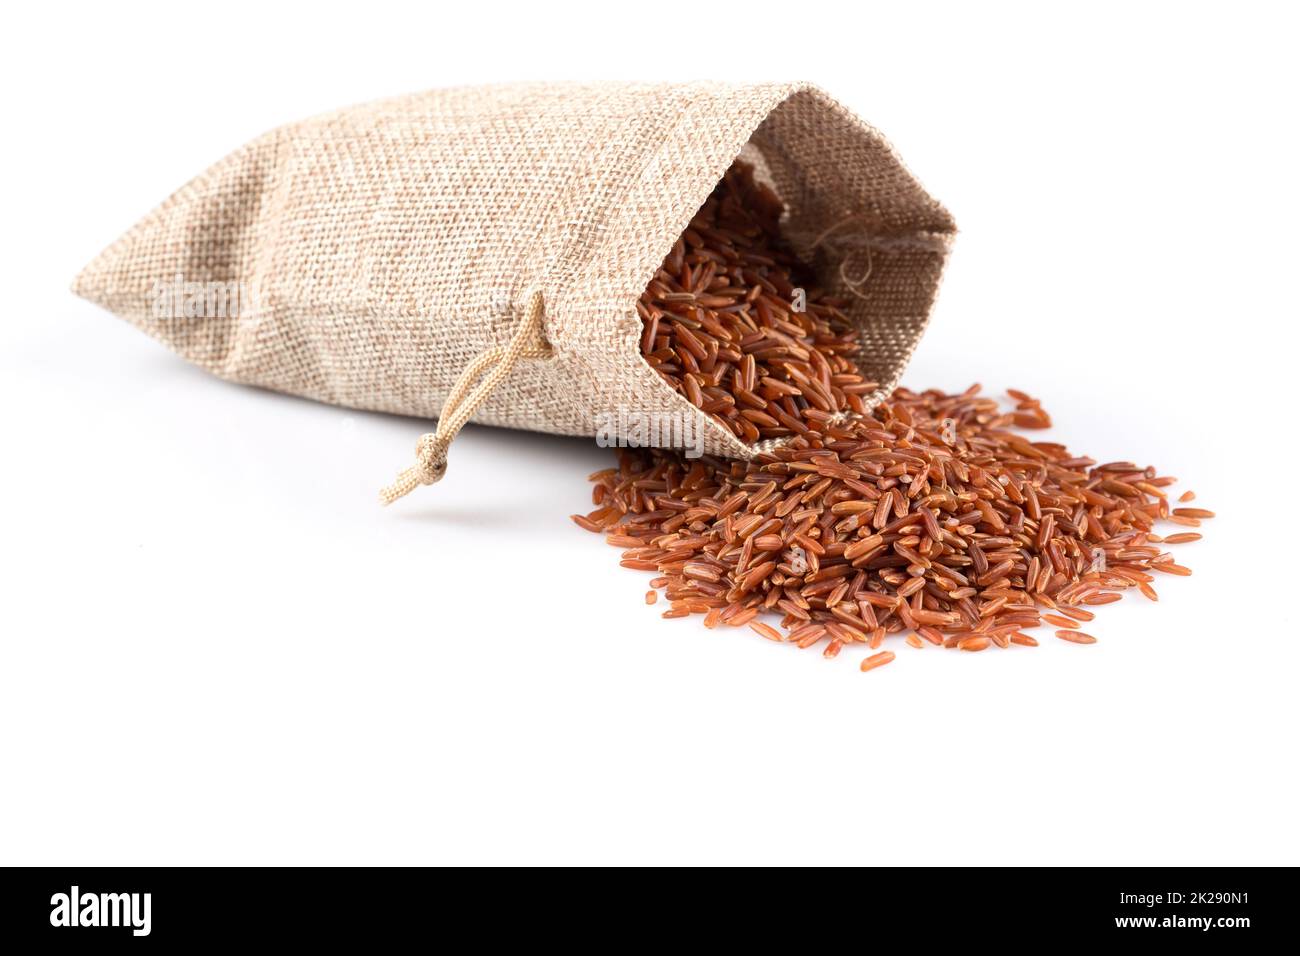 Roher Roter Reis in eine Schüssel geben und mit einem Holzlöffel  Stockfotografie - Alamy